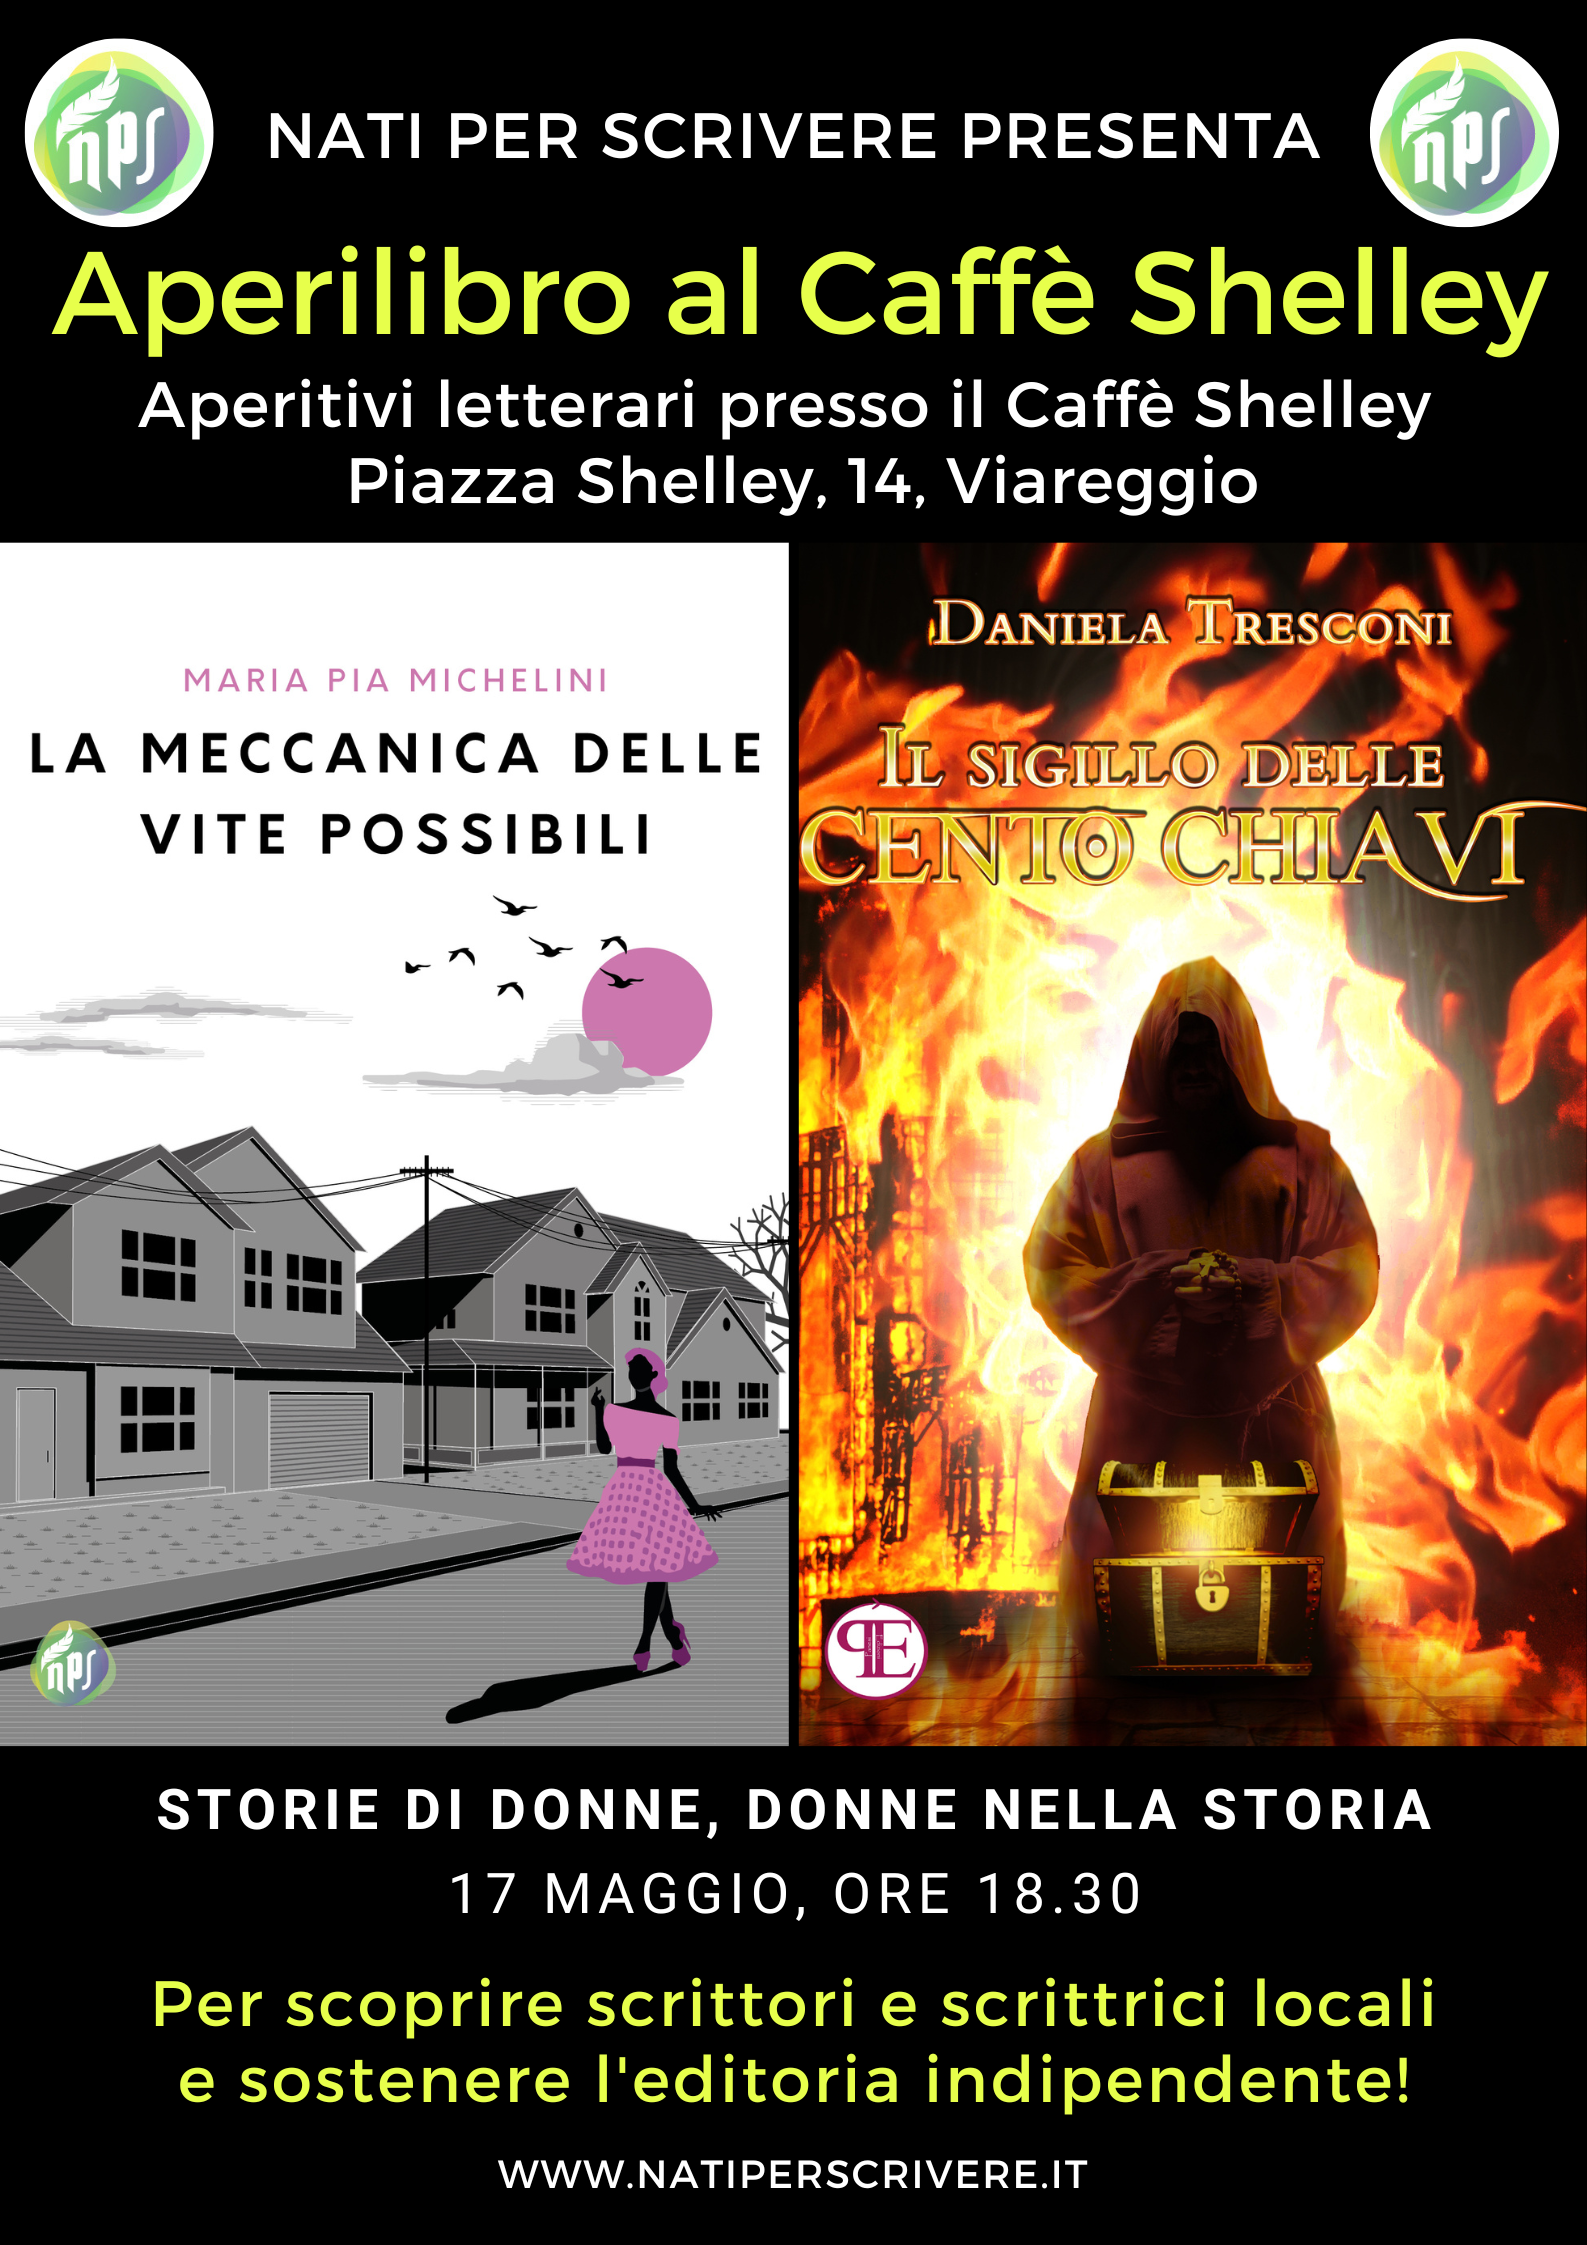 “STORIE DI DONNE, DONNE NELLA STORIA”: proseguono gli aperitivi letterari al Caffè di Viareggio